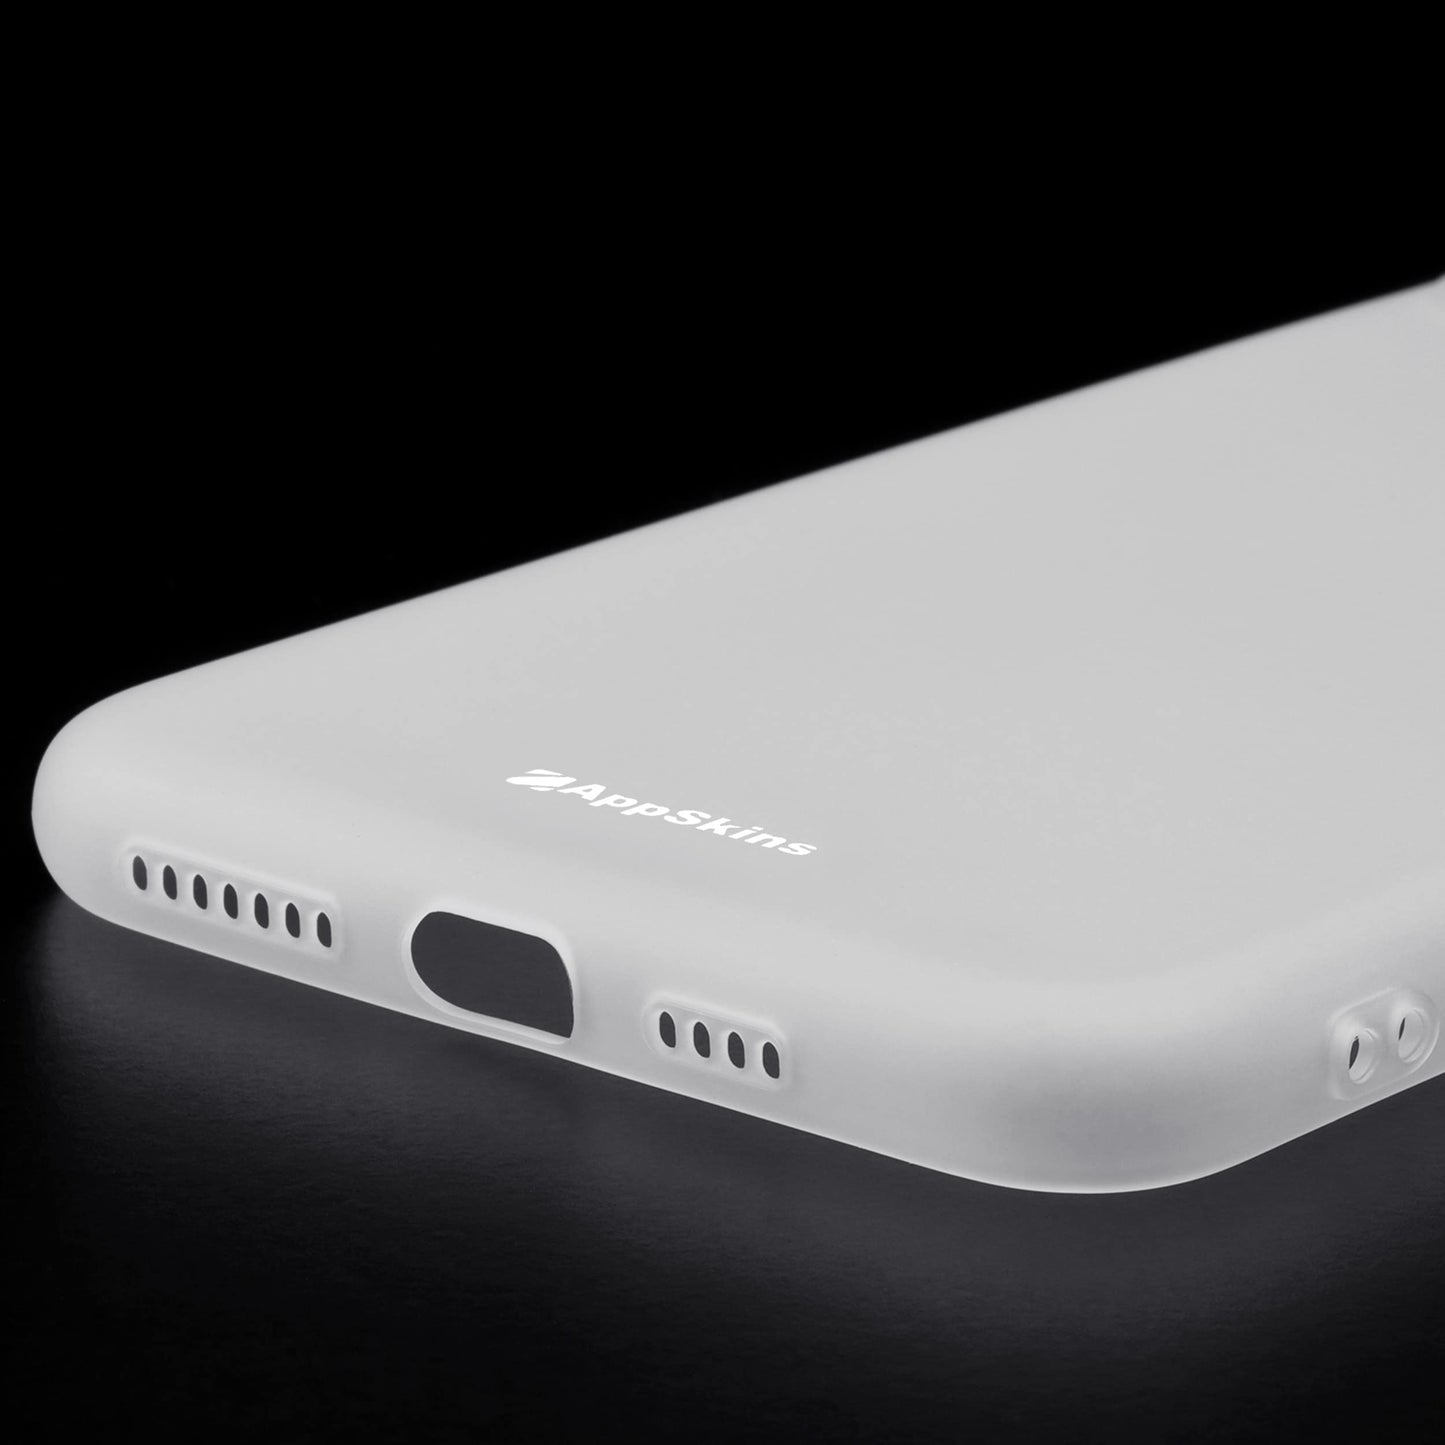 iPhone 11 Pro Max - Slim-Case